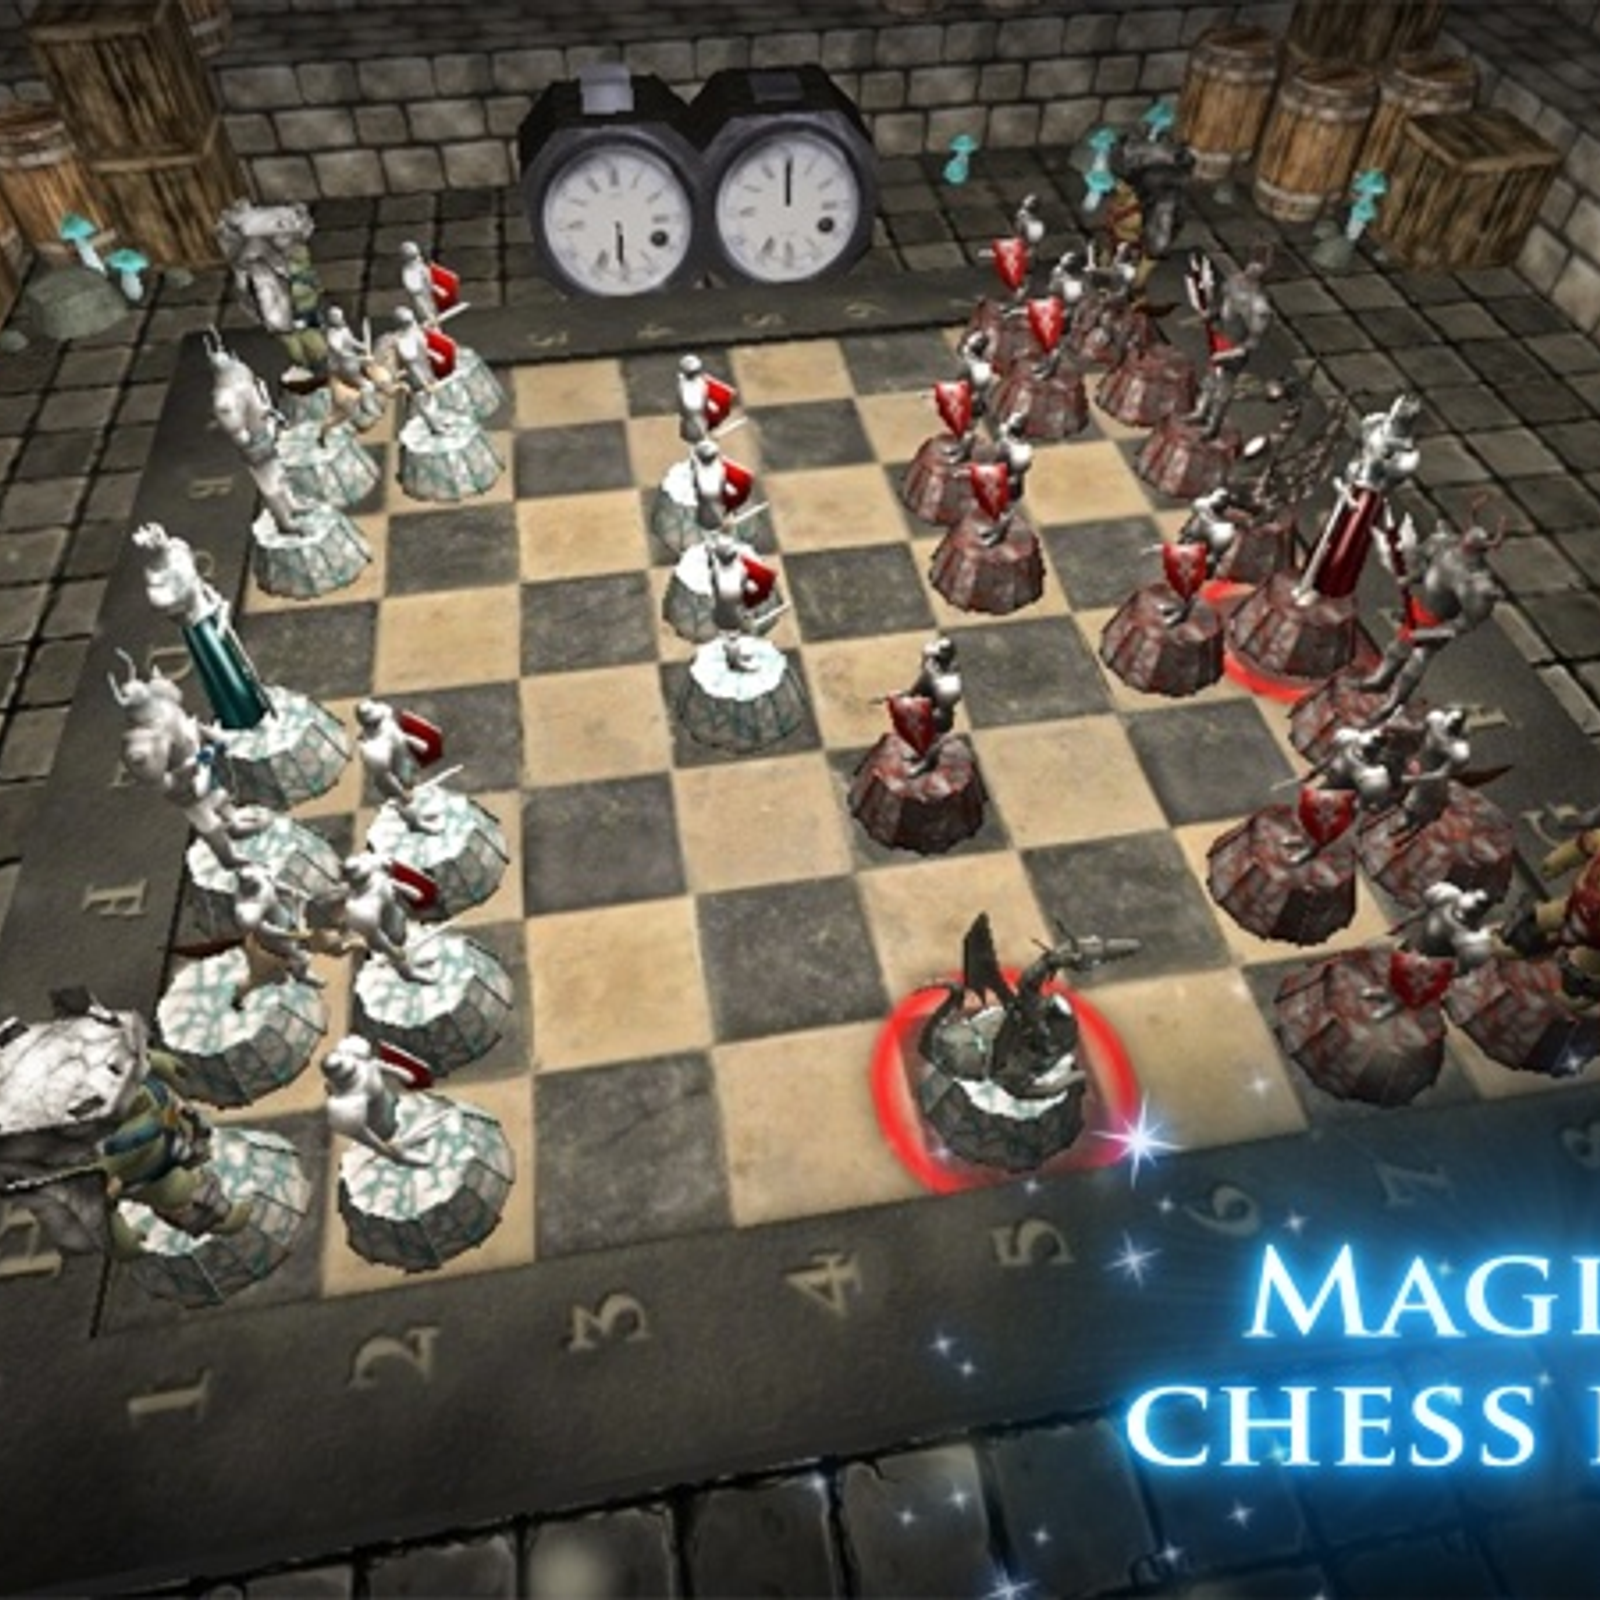 дота магические шахматы фото 69